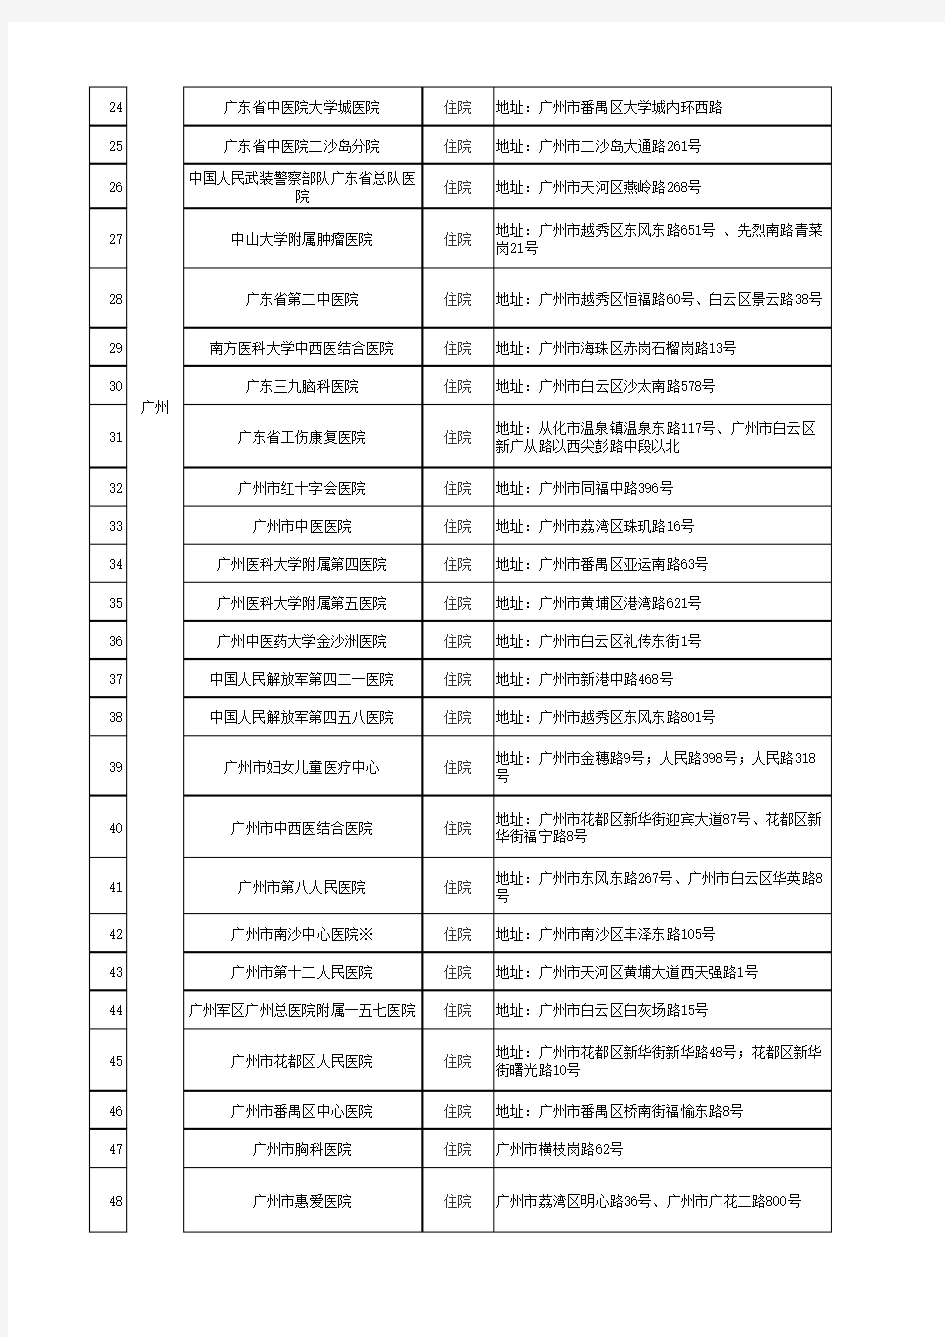 2017-08-28深圳市社会医疗保险市外定点医疗机构名单